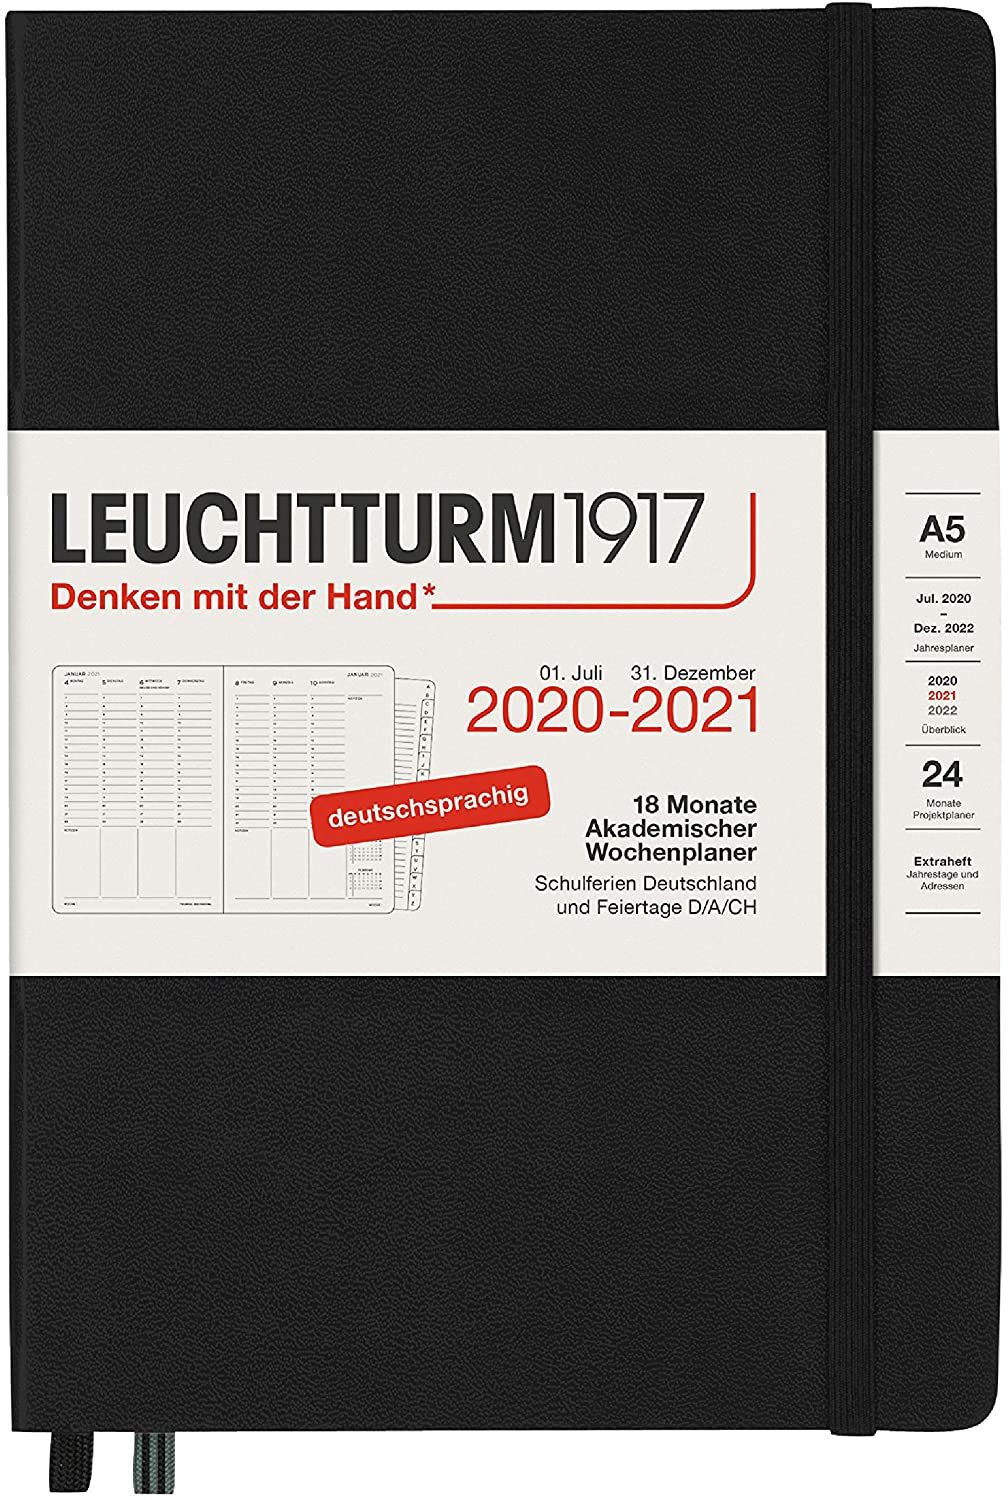 A5, Hardcover, Wochenplaner, Leuchturm1917